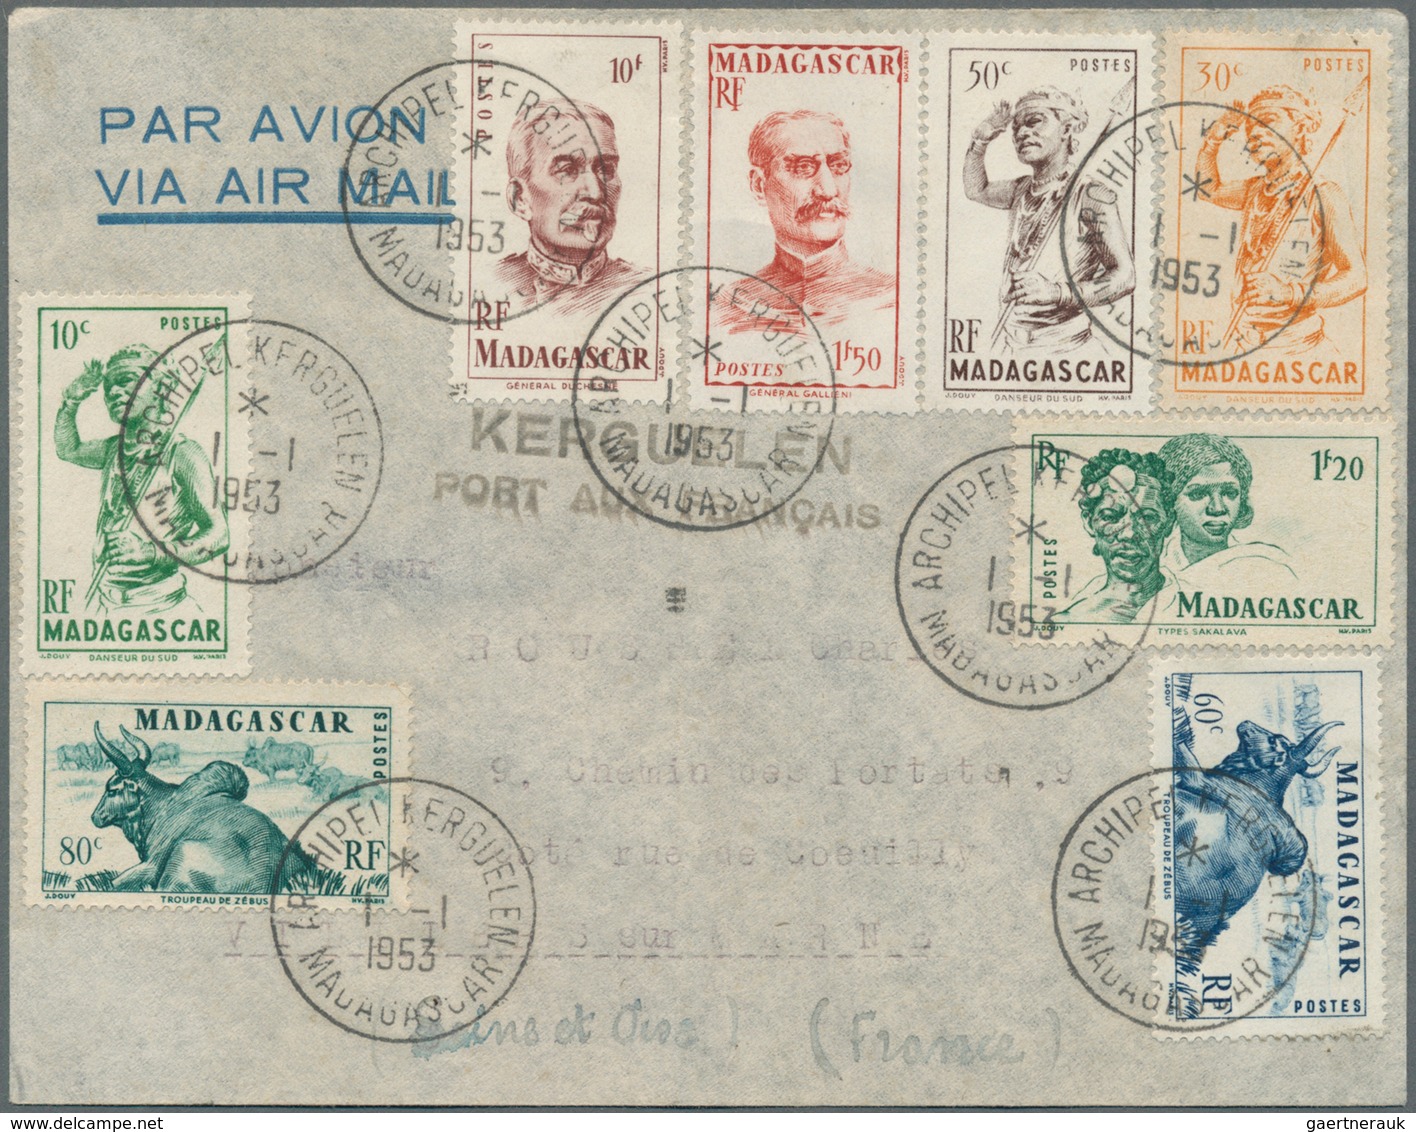 Französische Gebiete In Der Antarktis: 1953, "KERGUELEN PORT AUX FRANCAIS", Black Double Line On Air - Briefe U. Dokumente